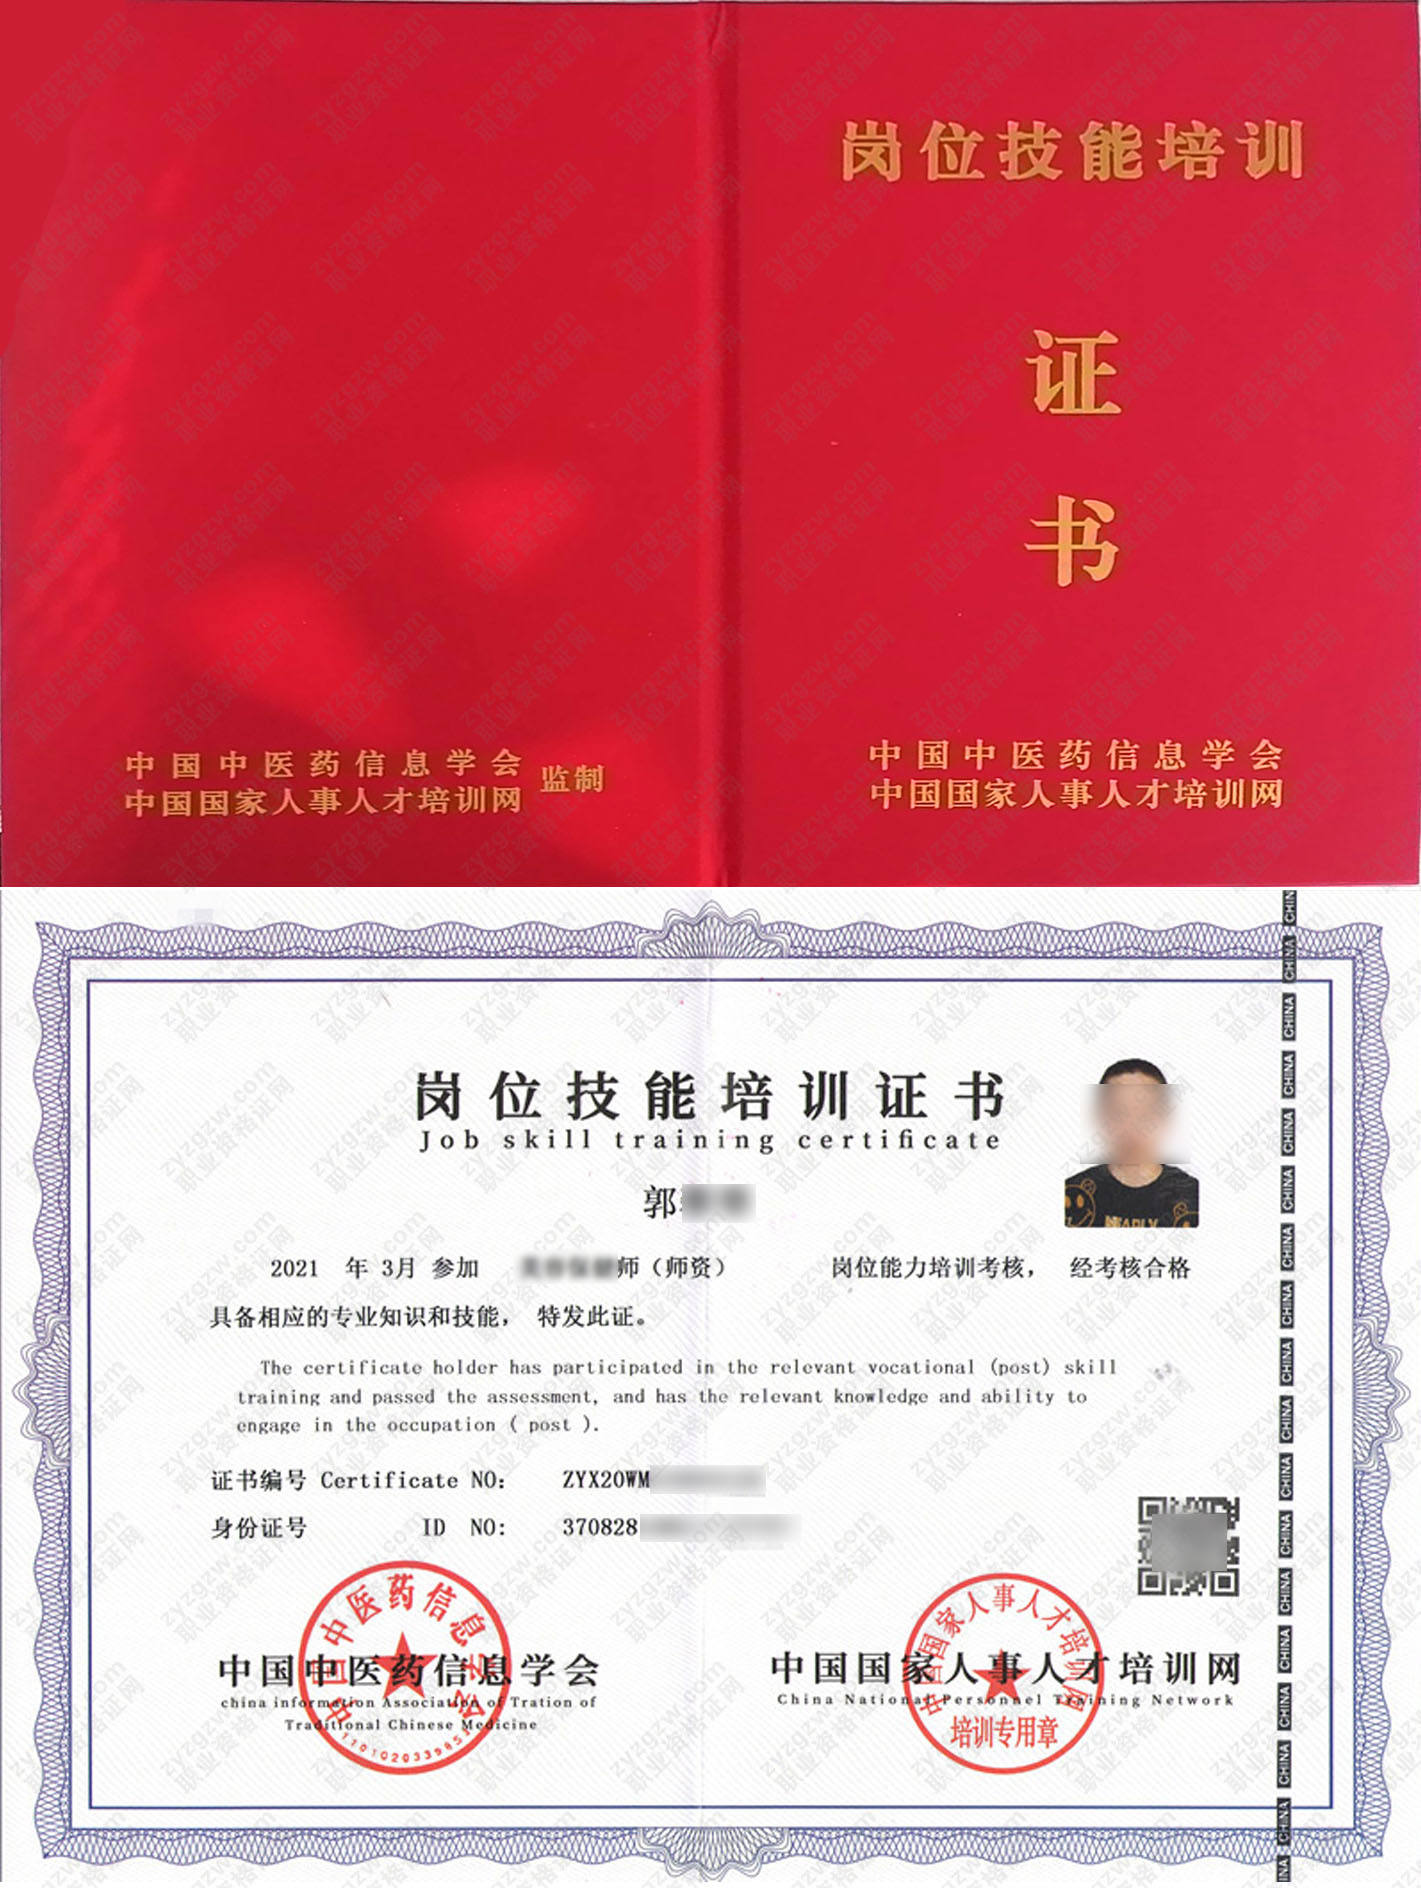 中国国家人事人才培训网 瑜伽师 岗位技能培训证书